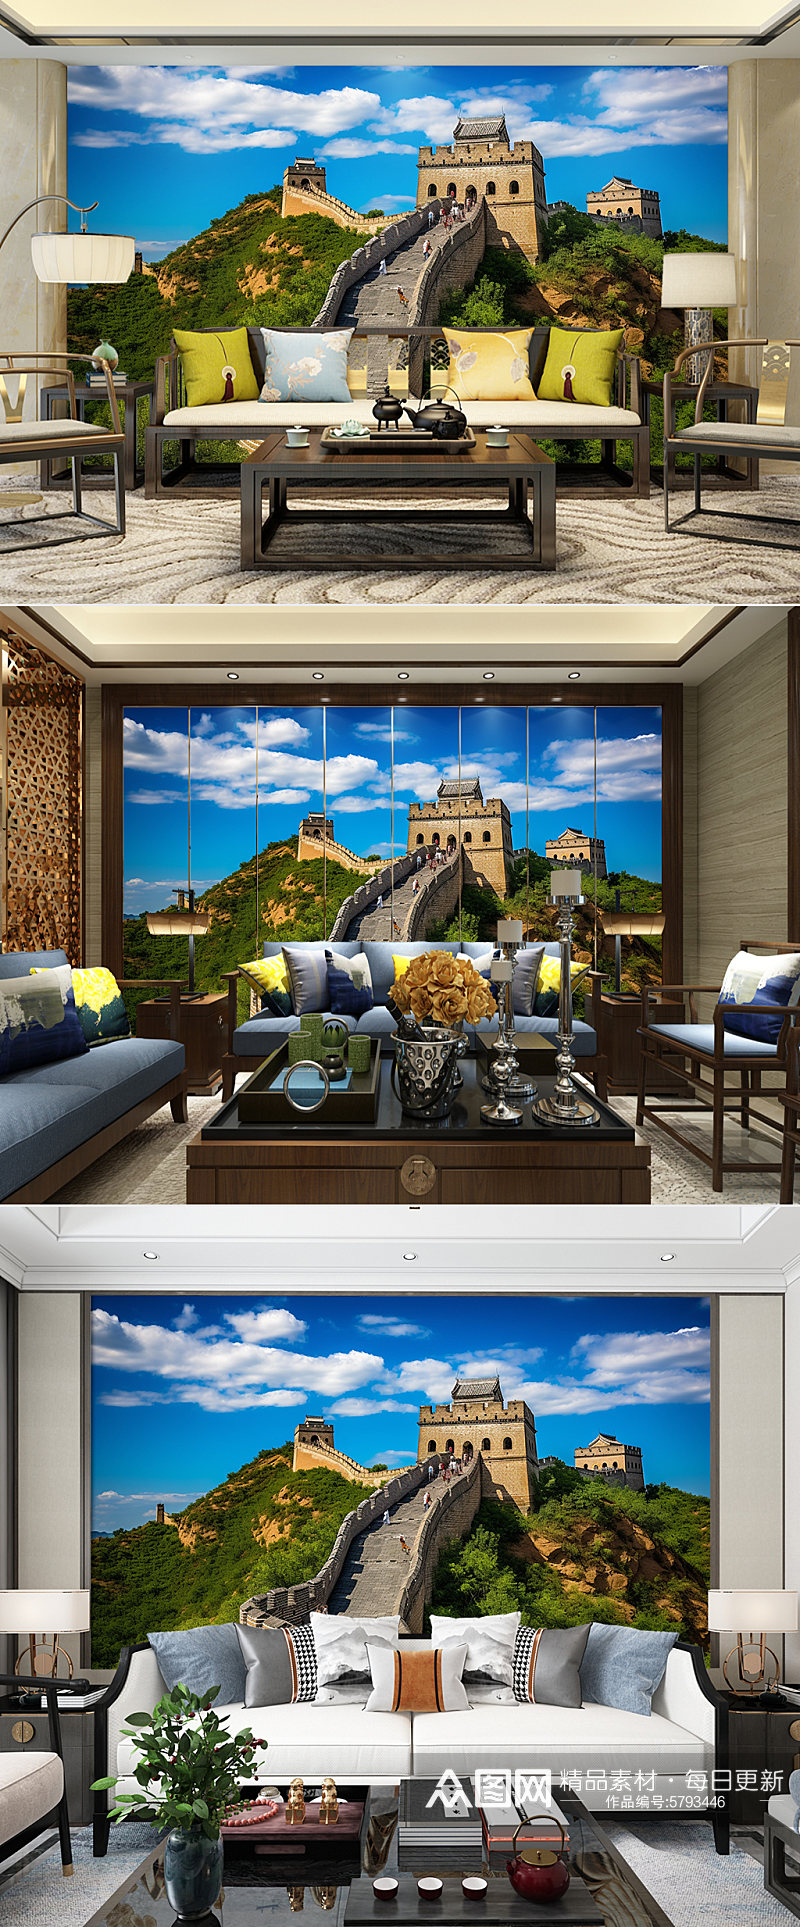 蓝天绿地北京长城装饰画电视背景墙素材